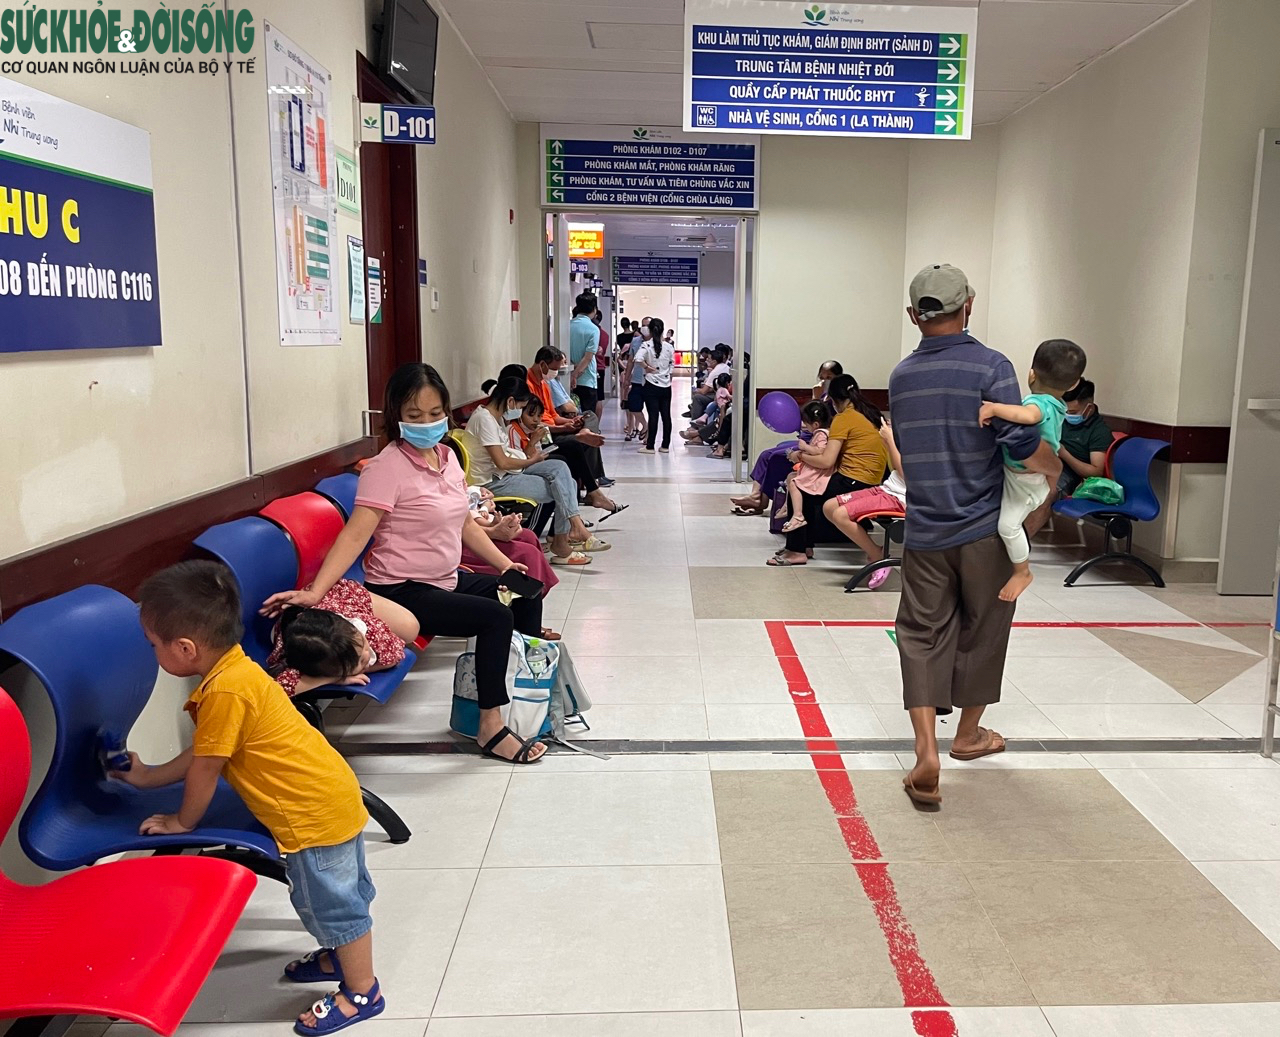 Nhiều bệnh viện tại Hà Nội quá tải do lượng bệnh nhi tăng đột biến - Ảnh 6.